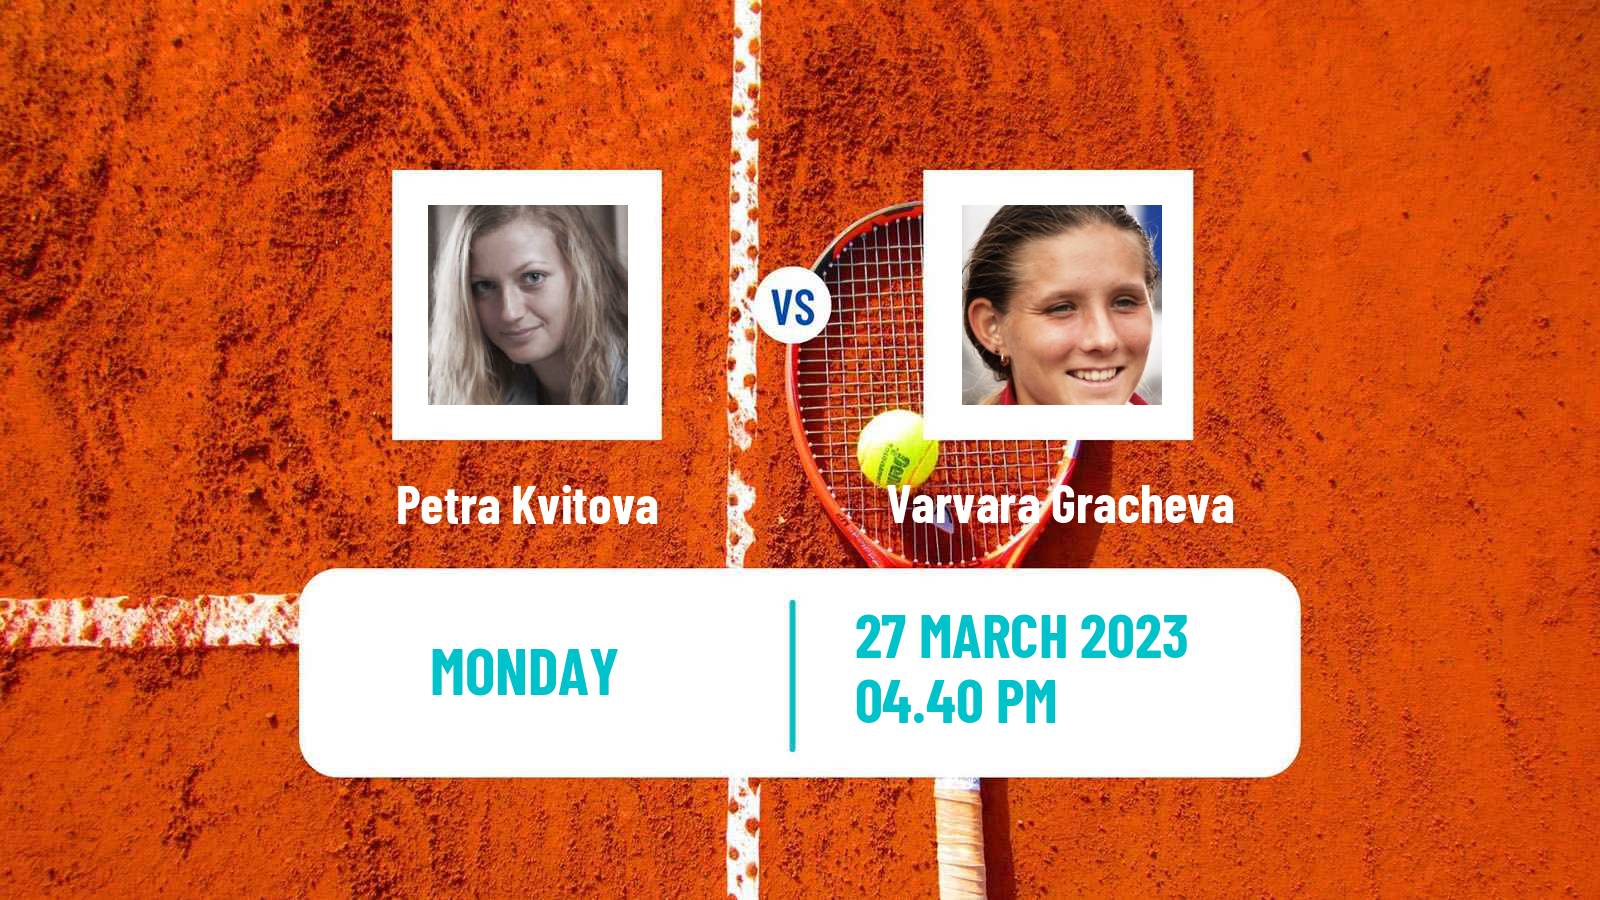 Tennis WTA Miami Petra Kvitova - Varvara Gracheva